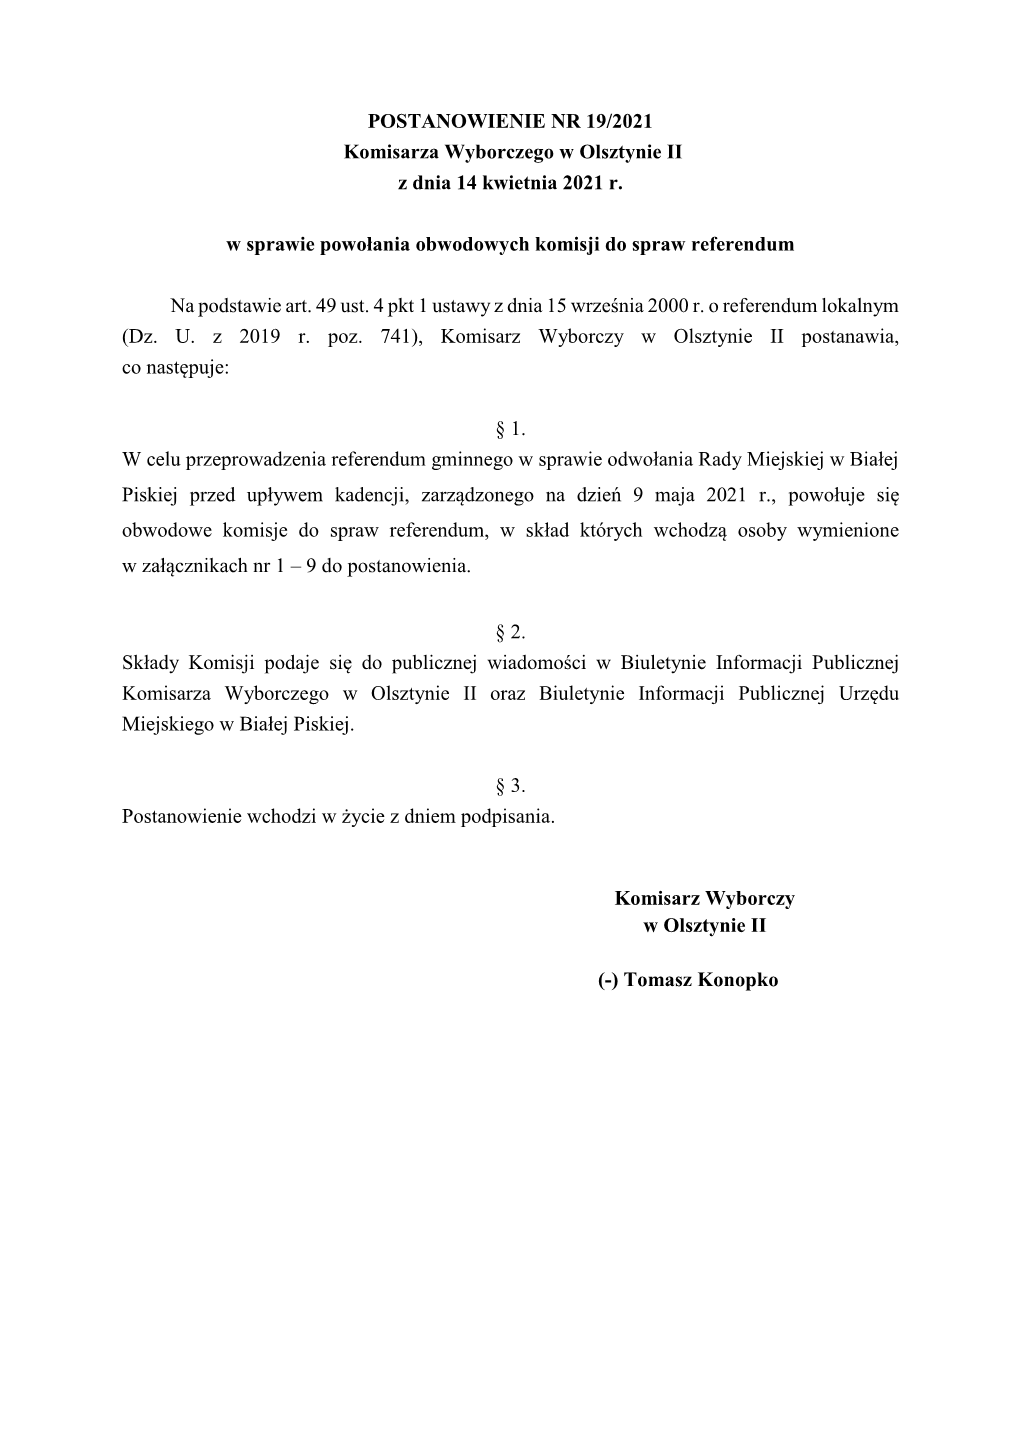 POSTANOWIENIE NR 19/2021 Komisarza Wyborczego W Olsztynie II Z Dnia 14 Kwietnia 2021 R